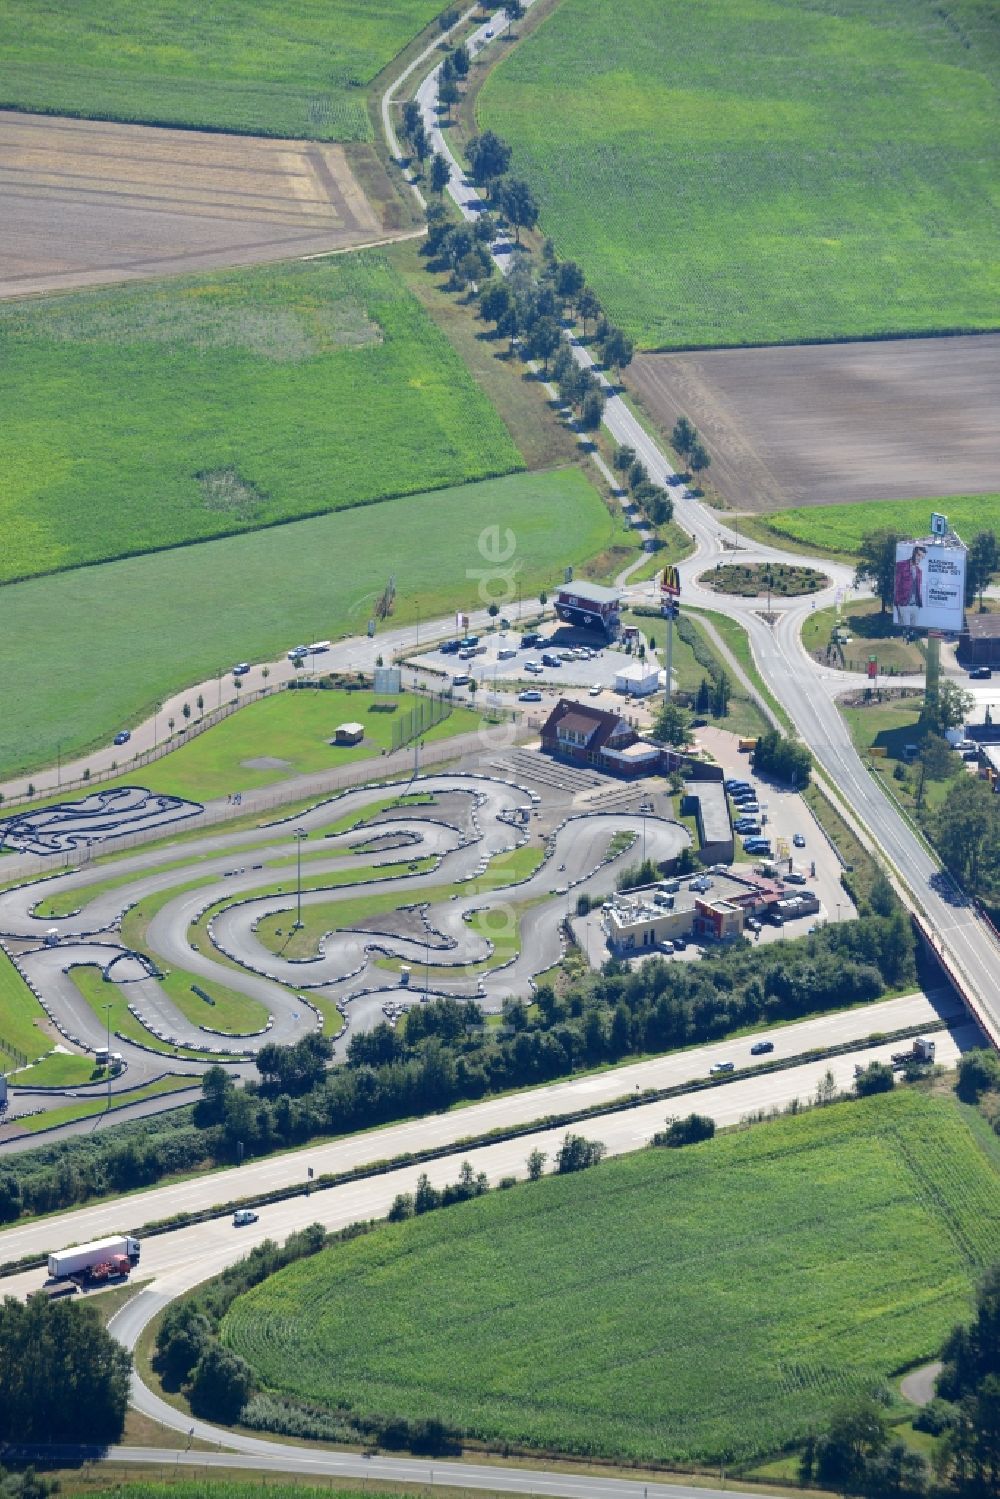 Luftaufnahme Bispingen - Gelände der Go- Kart- Rennbahn Ralf Schumacher Kart & Bowl an der BAB Bundes- Autobahn E45 - A7 in Bispingen im Bundesland Niedersachsen